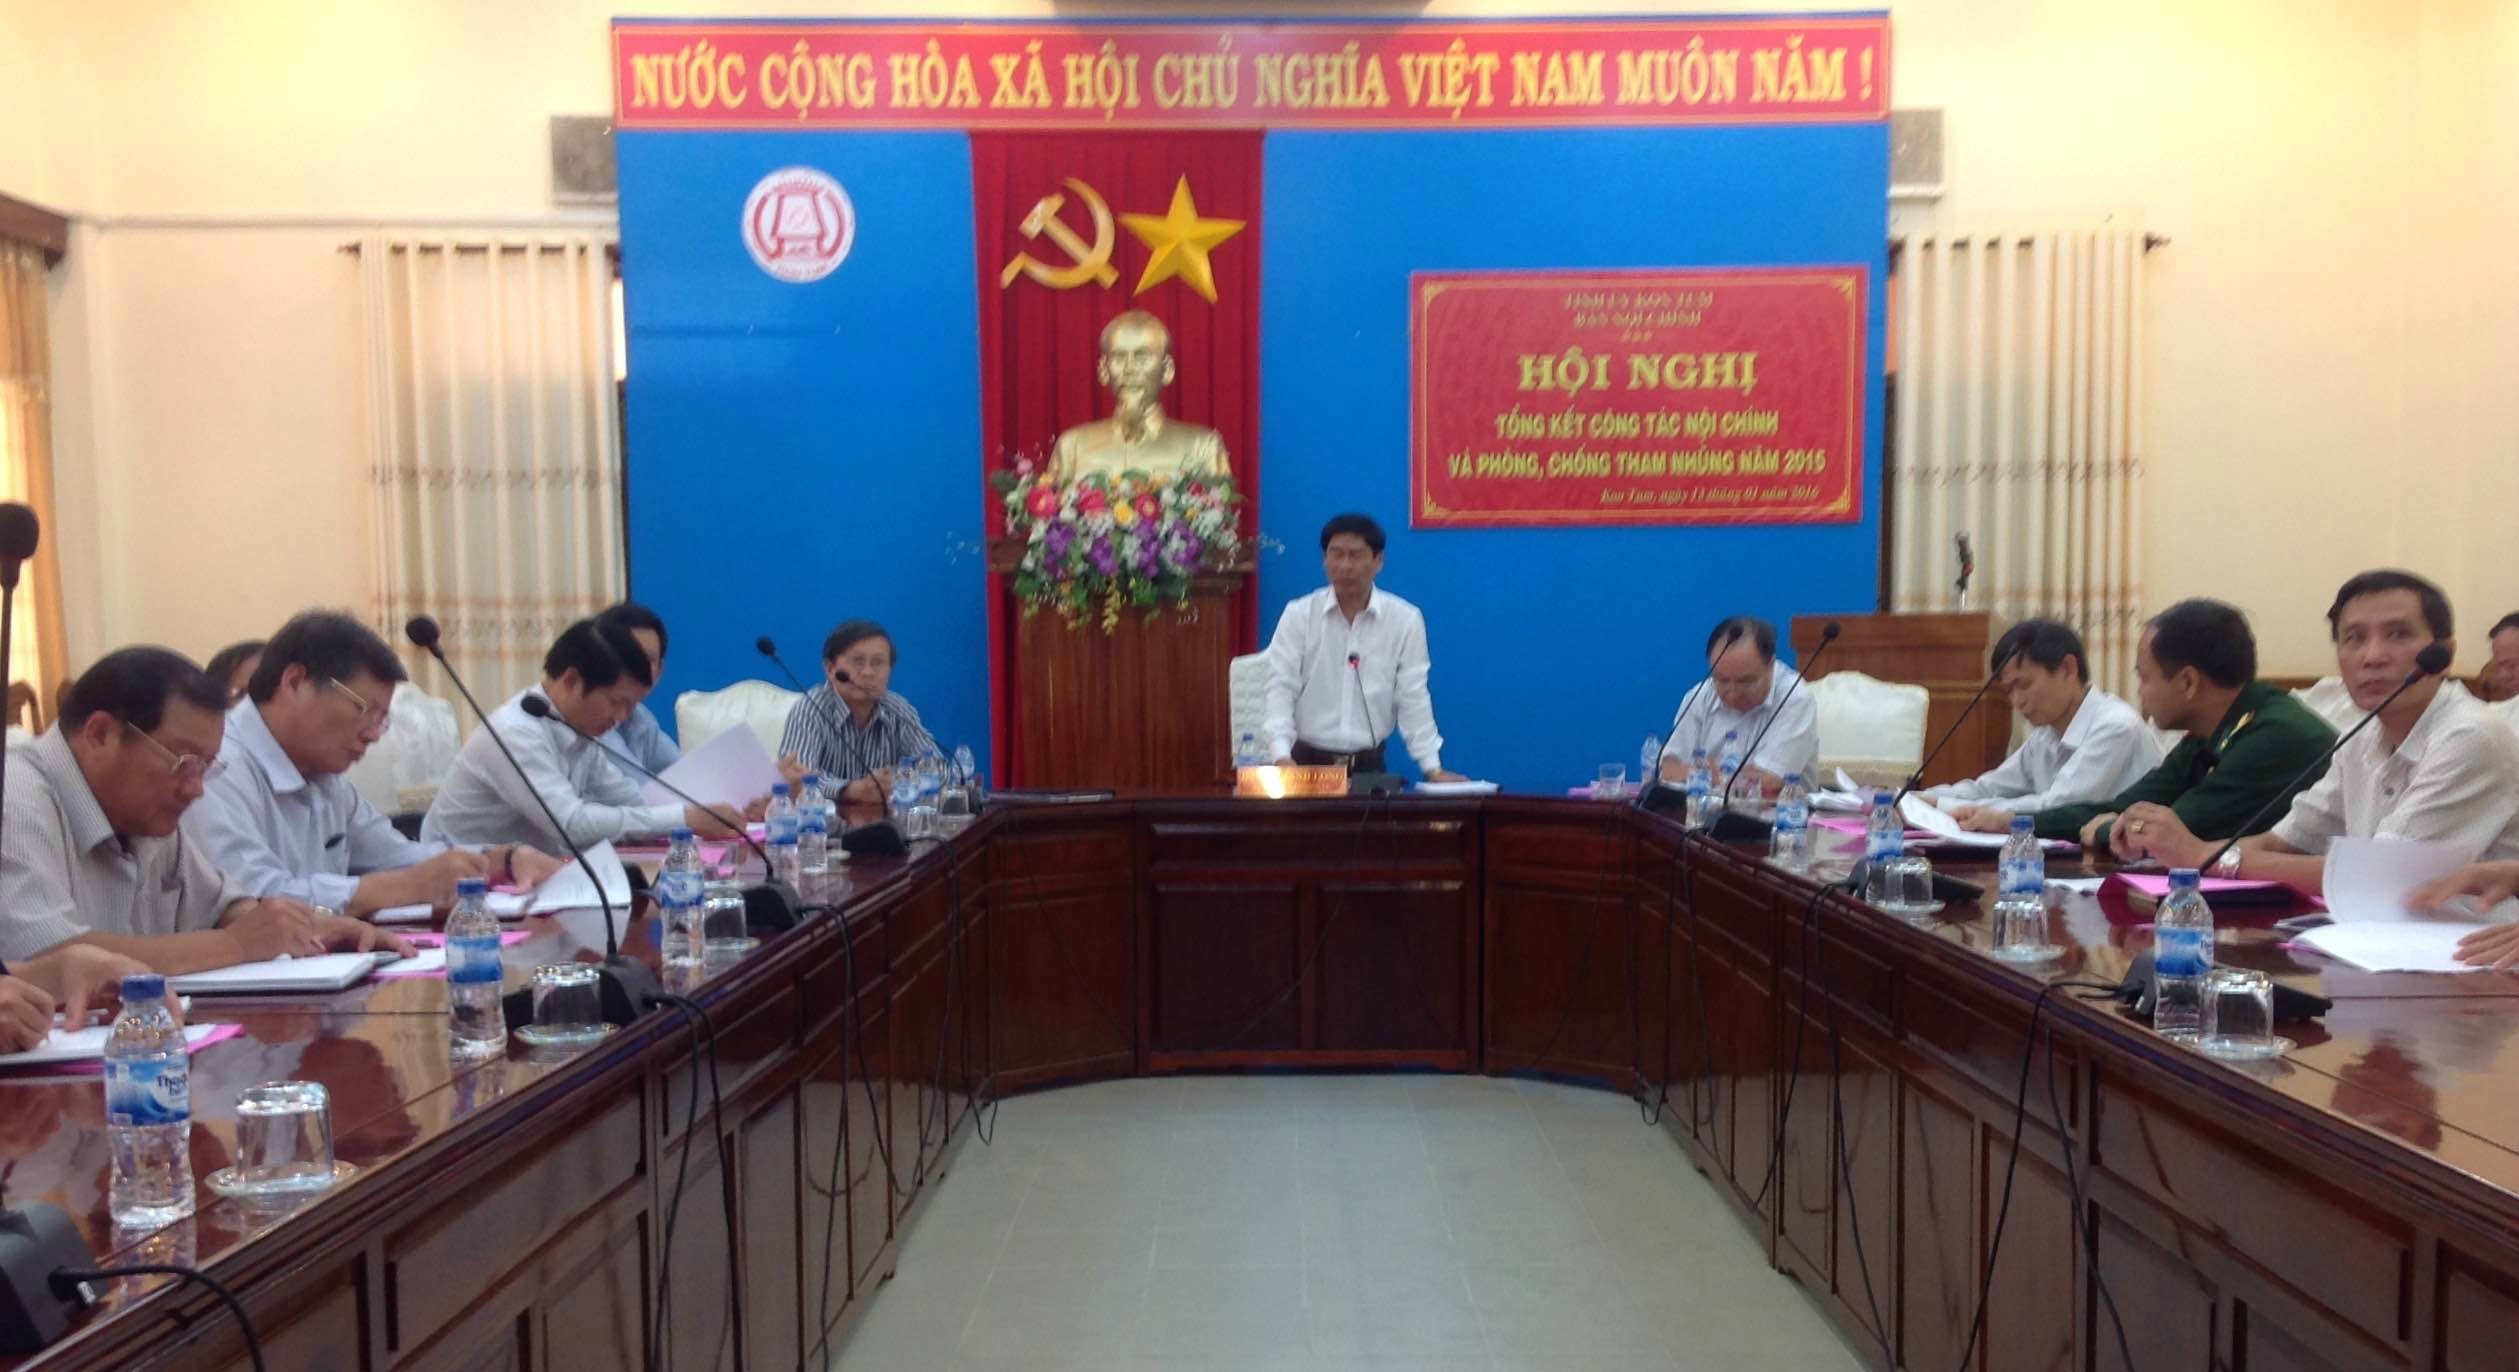 Hội nghị giao ban công tác nội chính của Ban Nội chính Tỉnh ủy Kon Tum